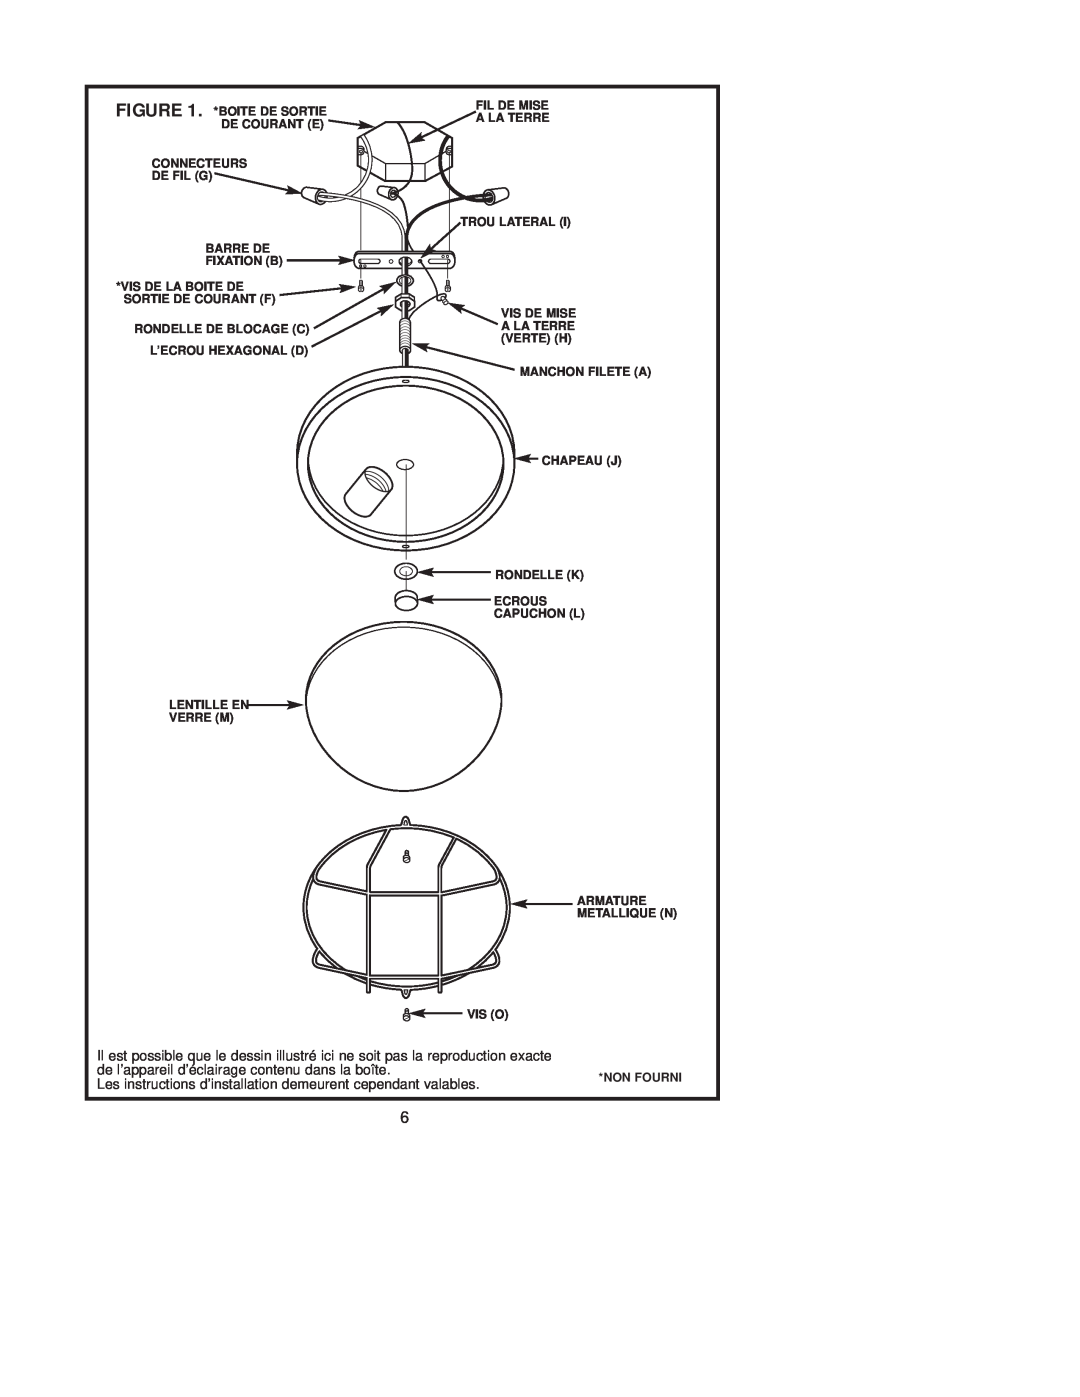 Westinghouse W-207 071705 owner manual de l’appareil d’éclairage contenu dans la boîte 